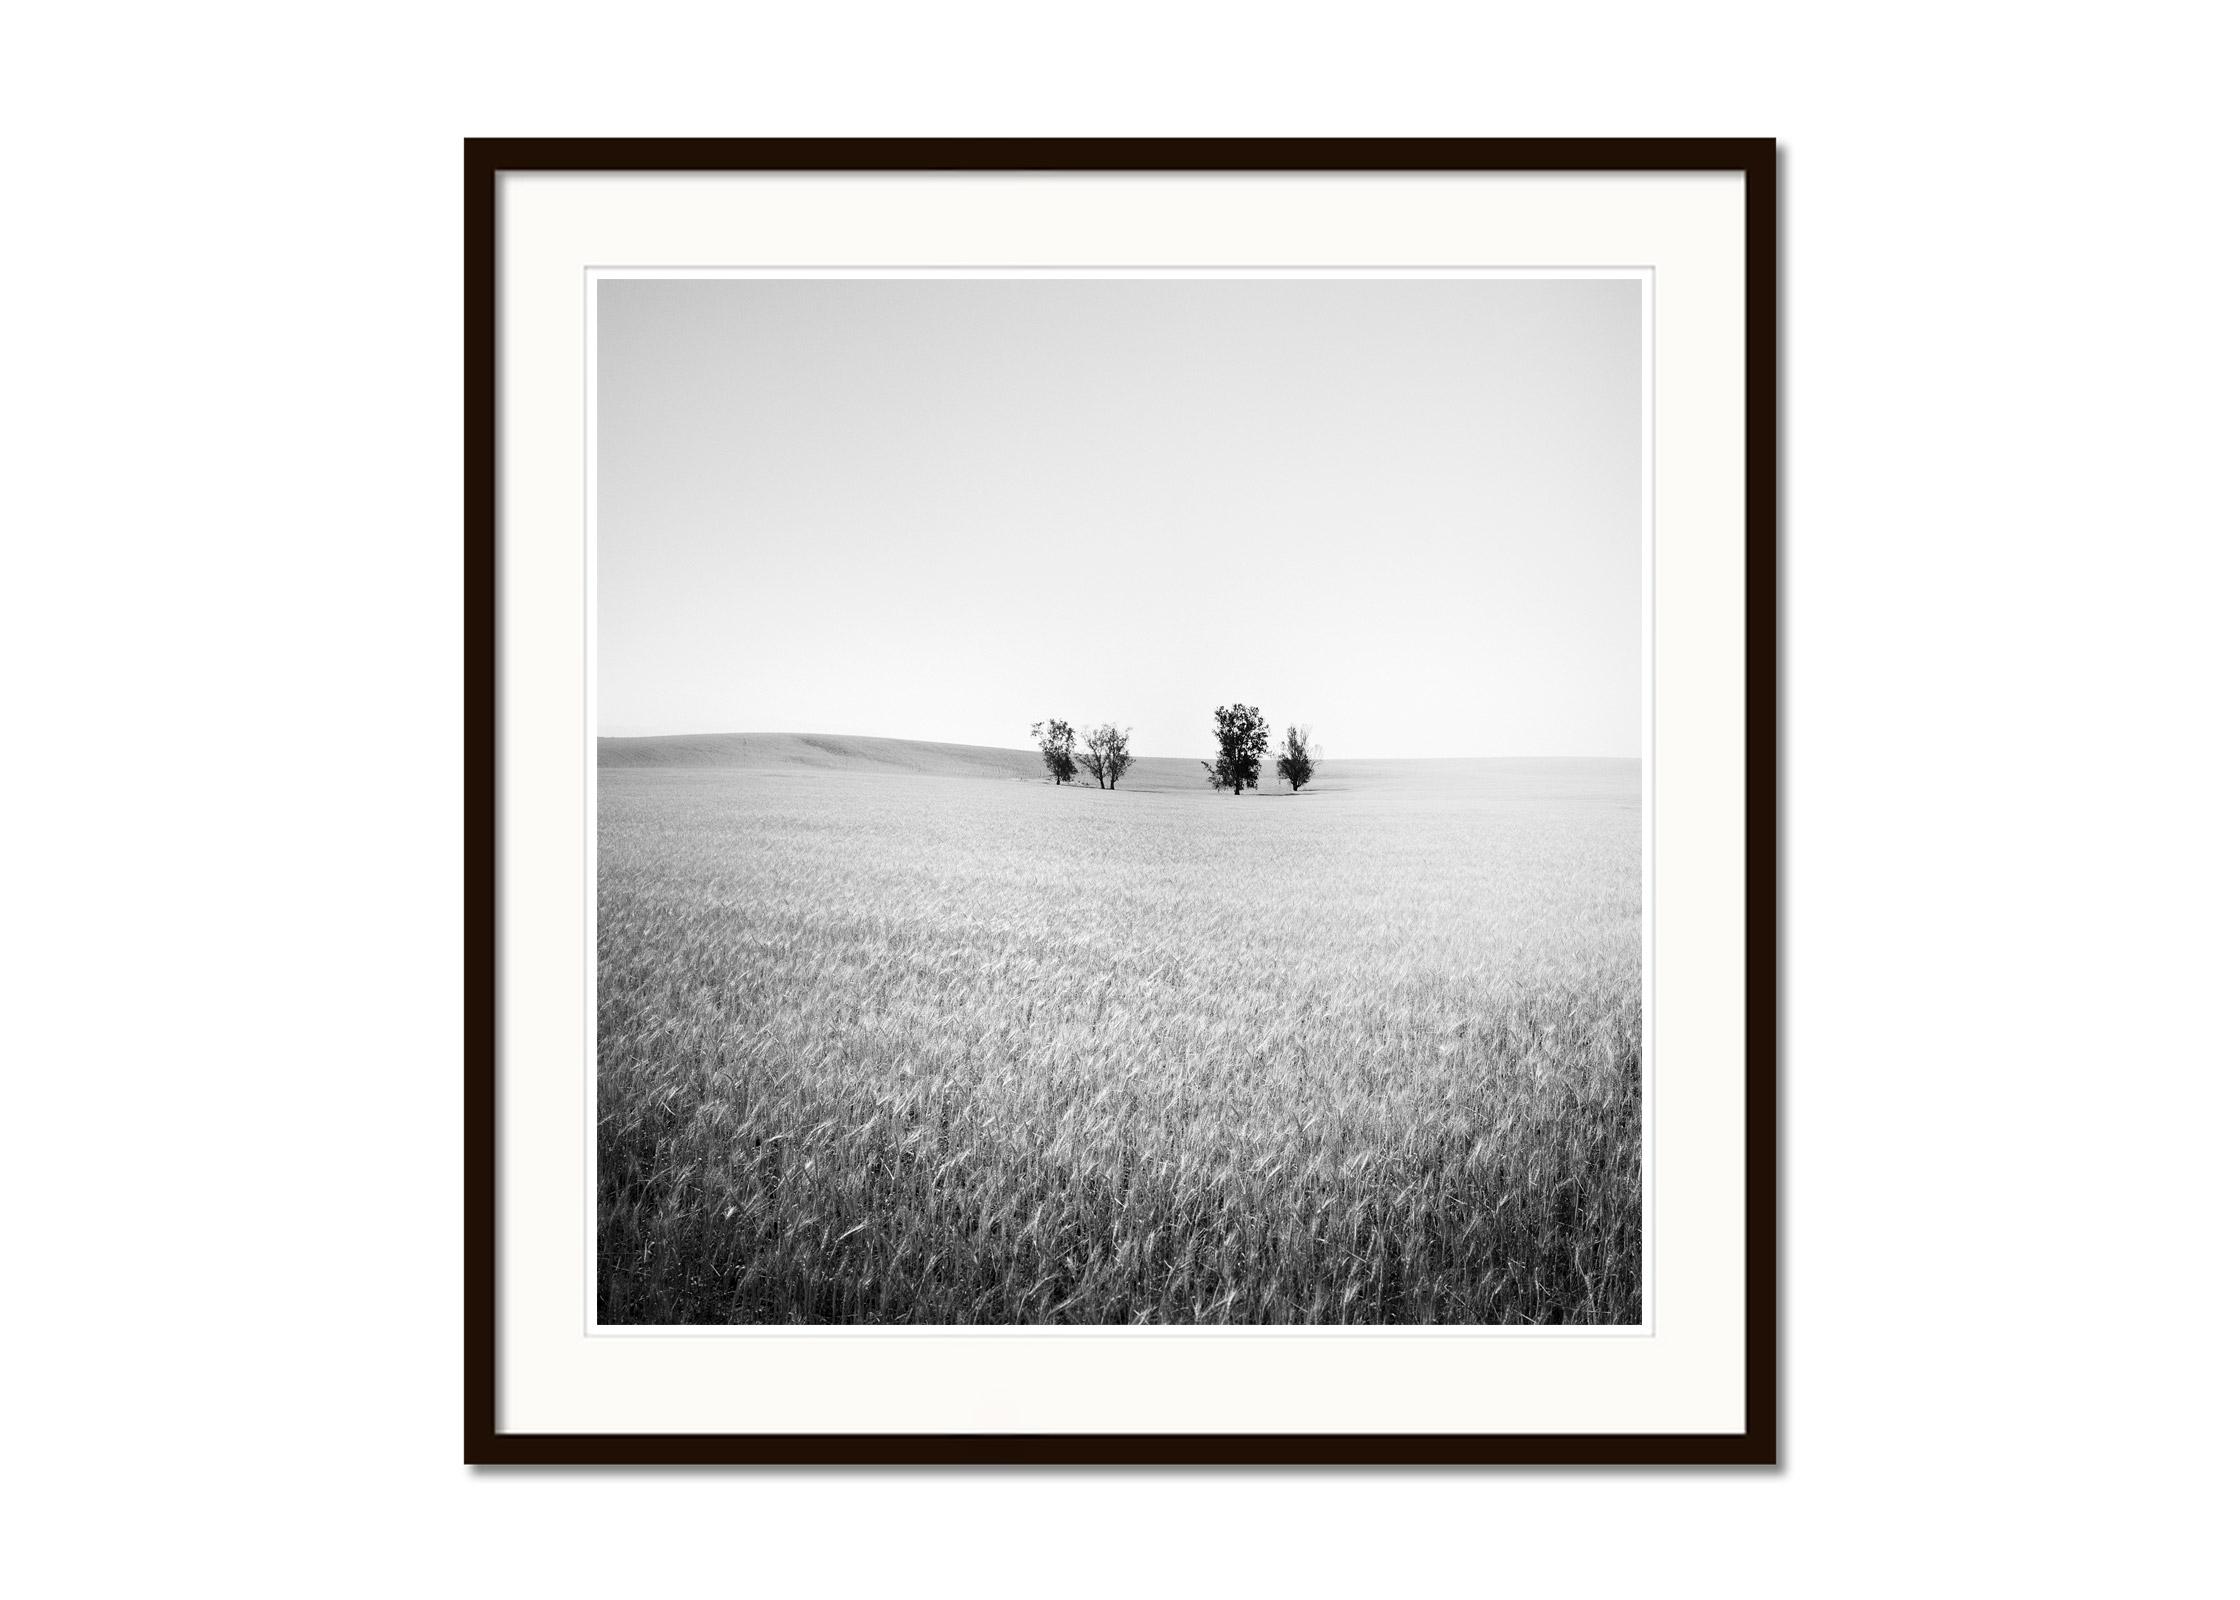 Bäume auf Weizen field, Kalifornien, USA, Schwarz-Weiß-Landschaftsfotografie (Grau), Landscape Photograph, von Gerald Berghammer